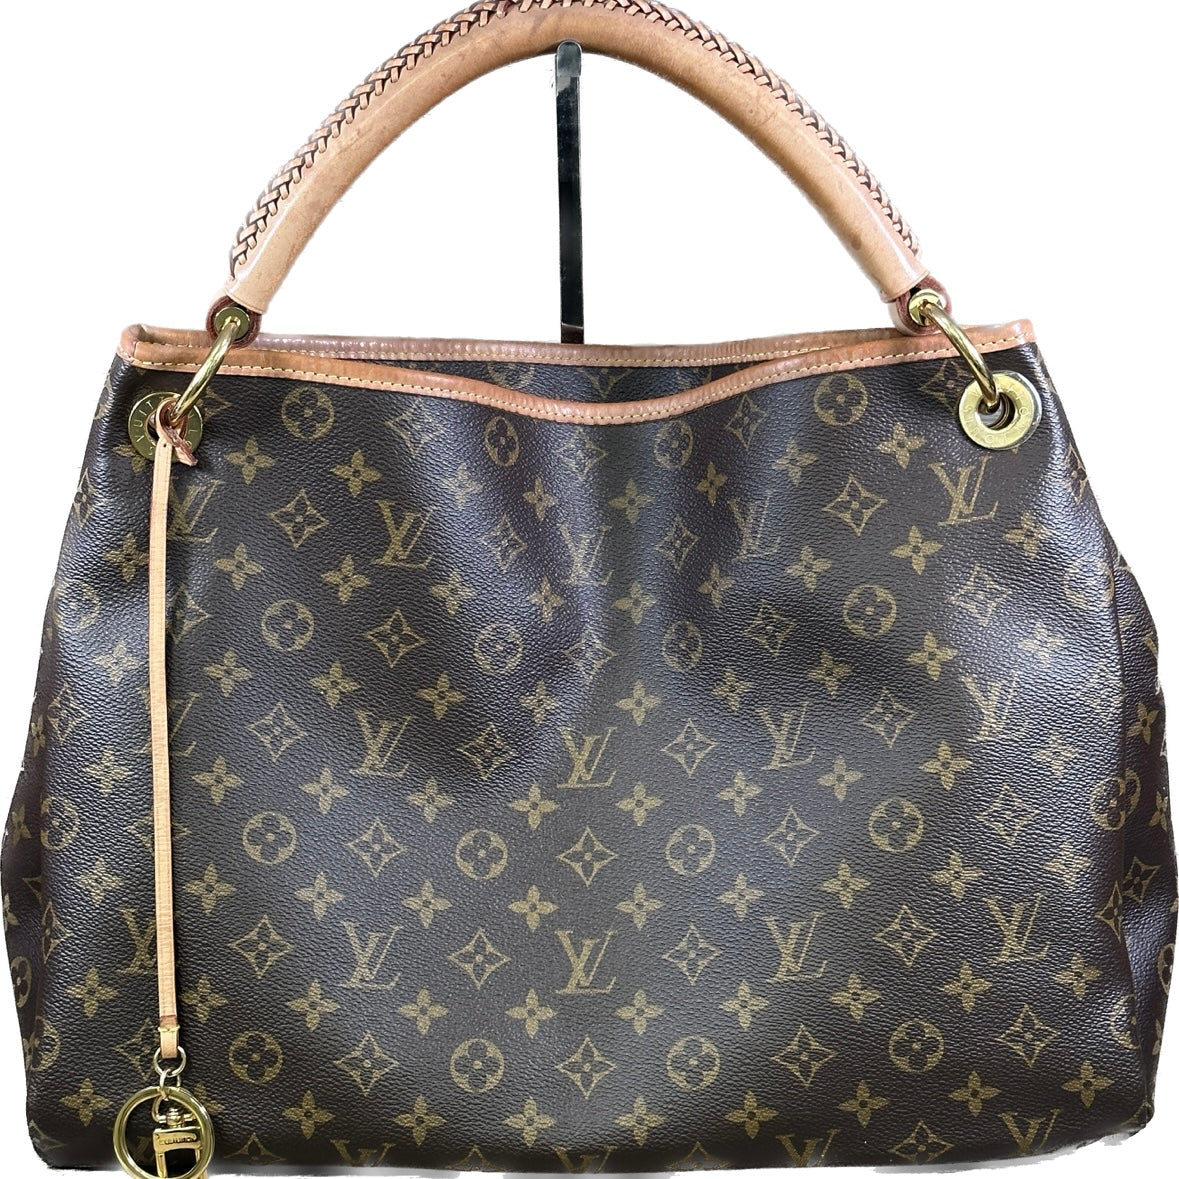 Louis Vuitton Artsy Monogram Canvas Handbag